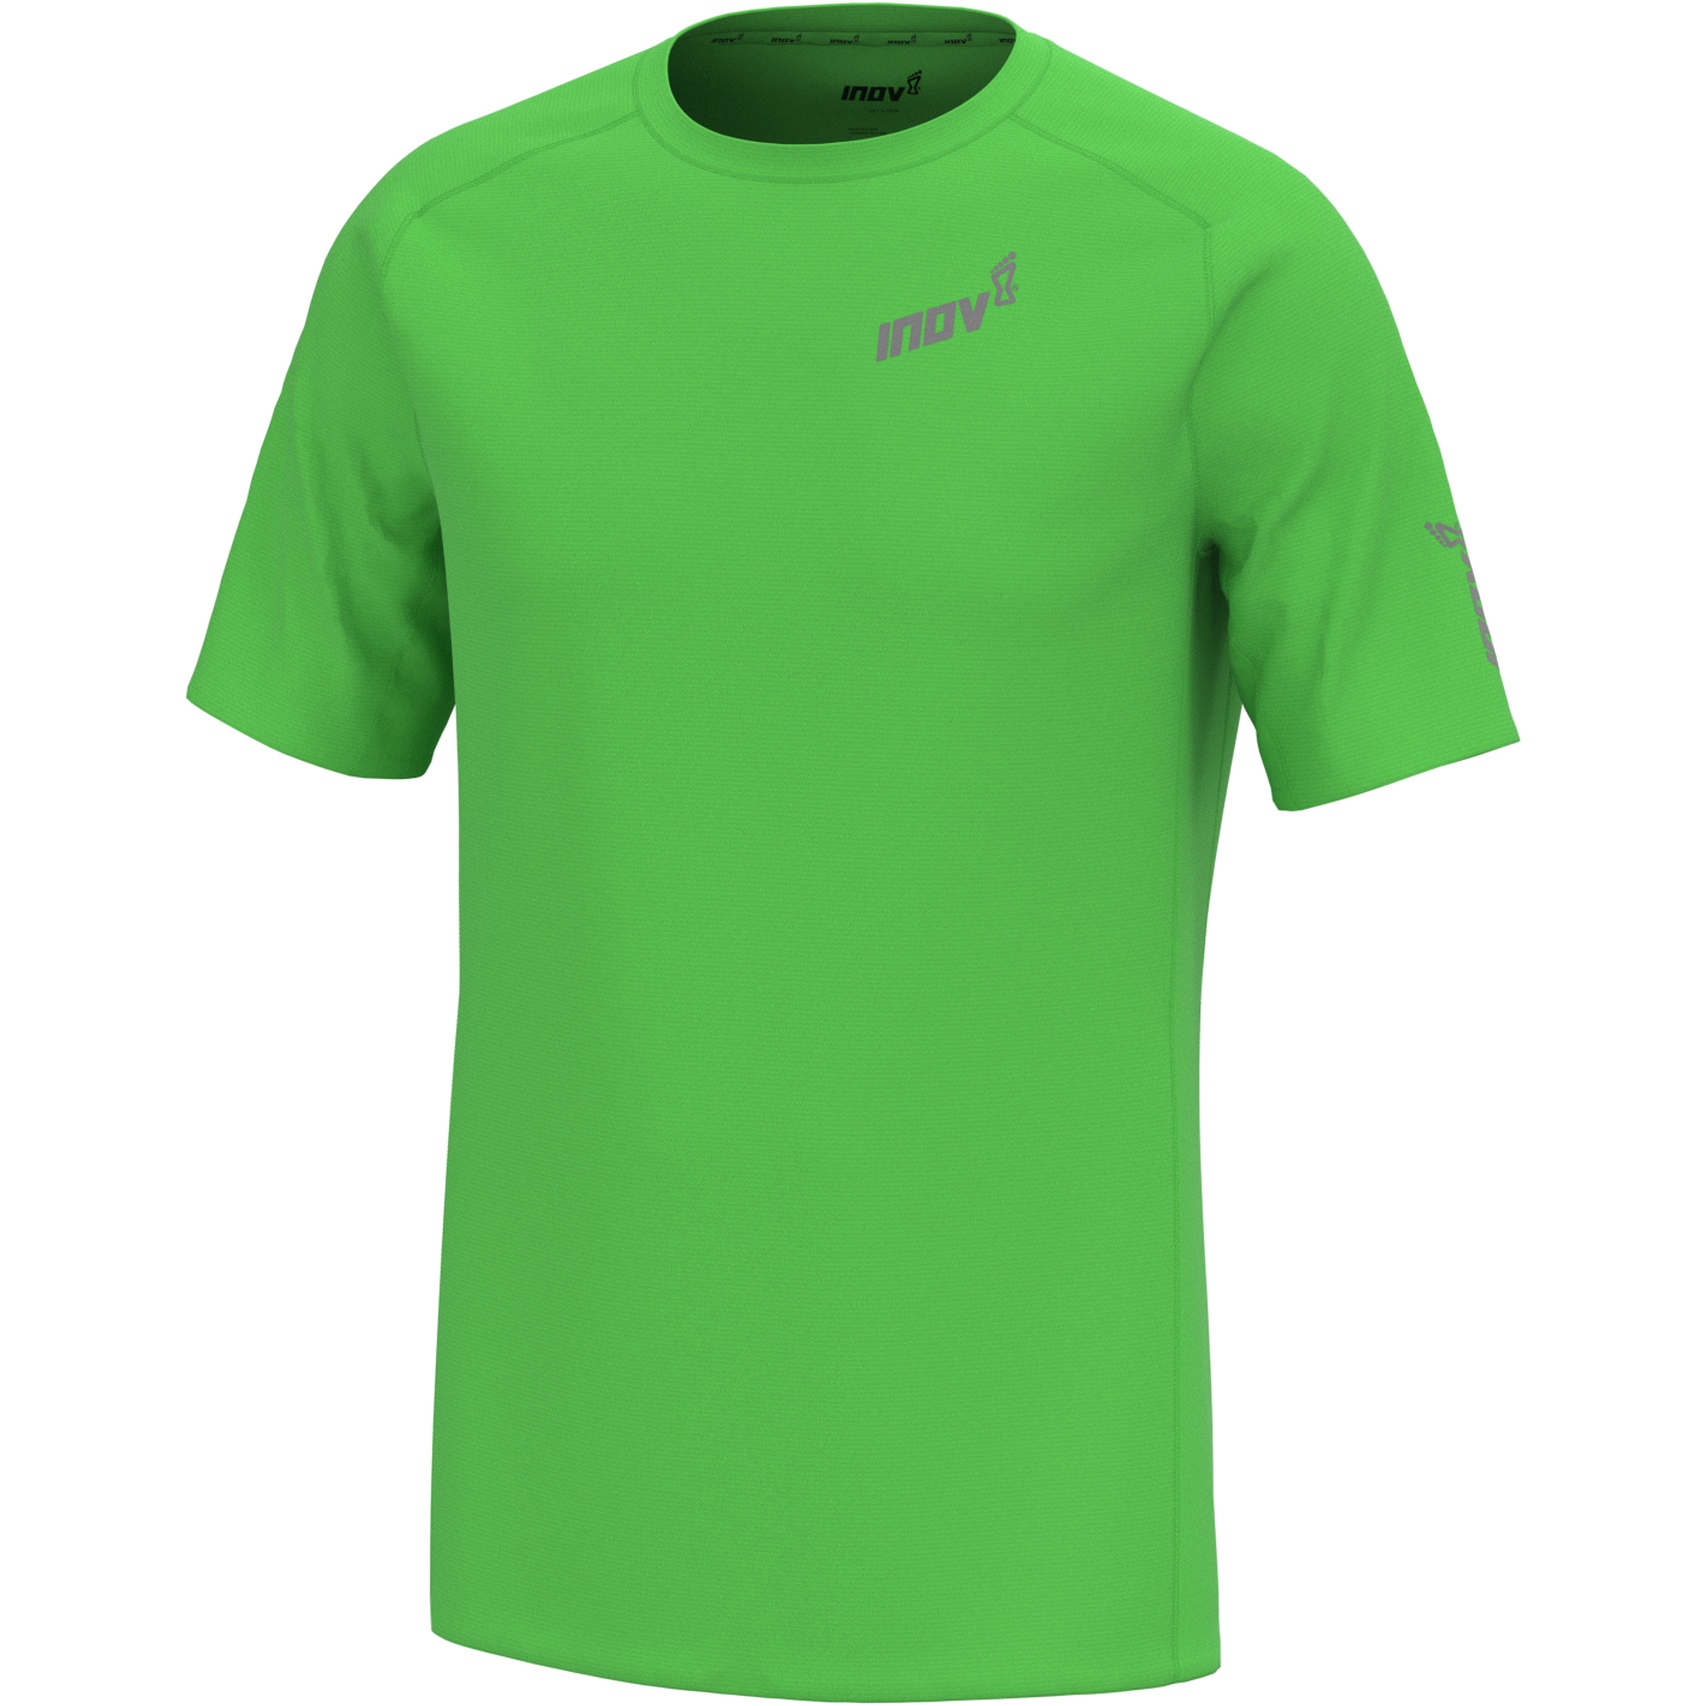 Imagen de Inov-8 Base Elite Camiseta Running - verde